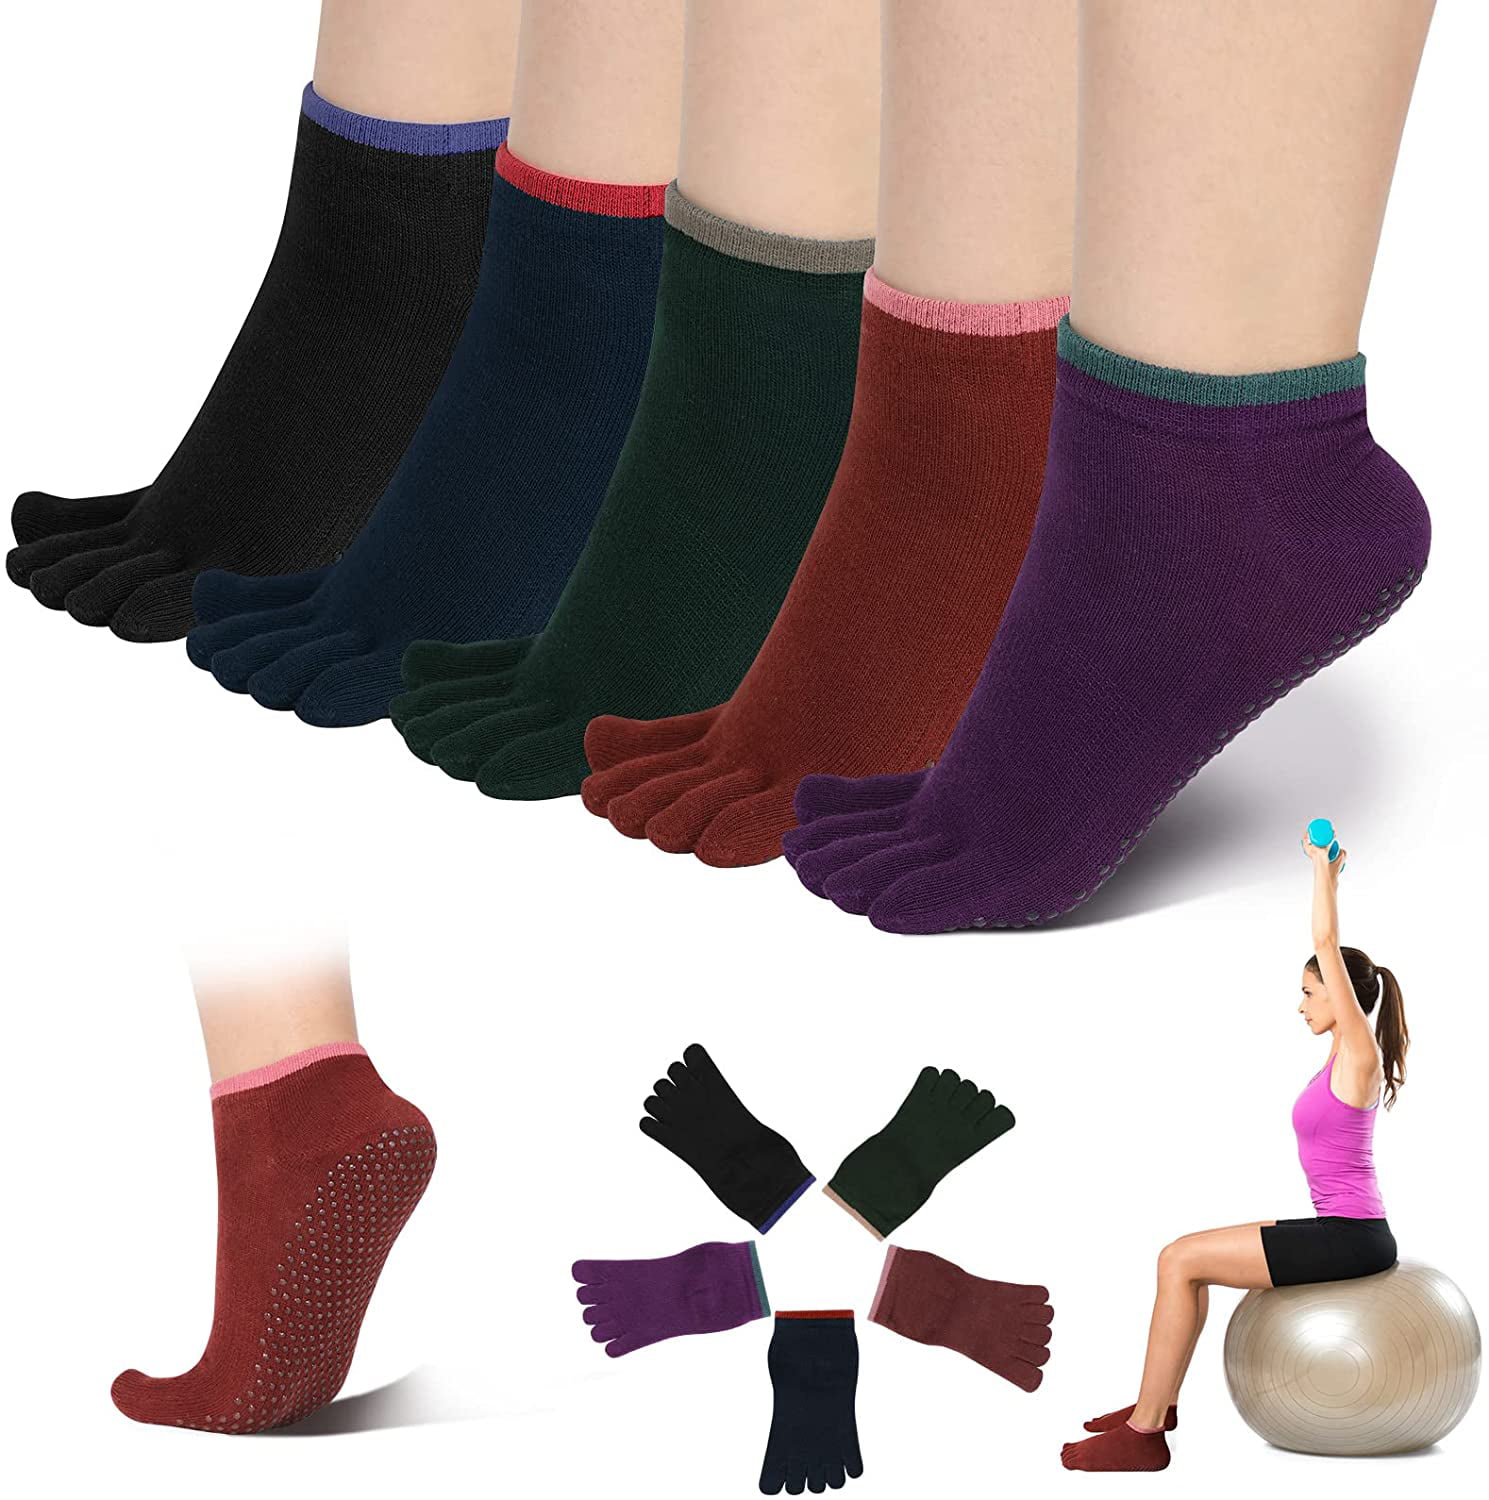 Women Toeless Non Slip Yoga Pilates Socks with Grips # 5 Pair 